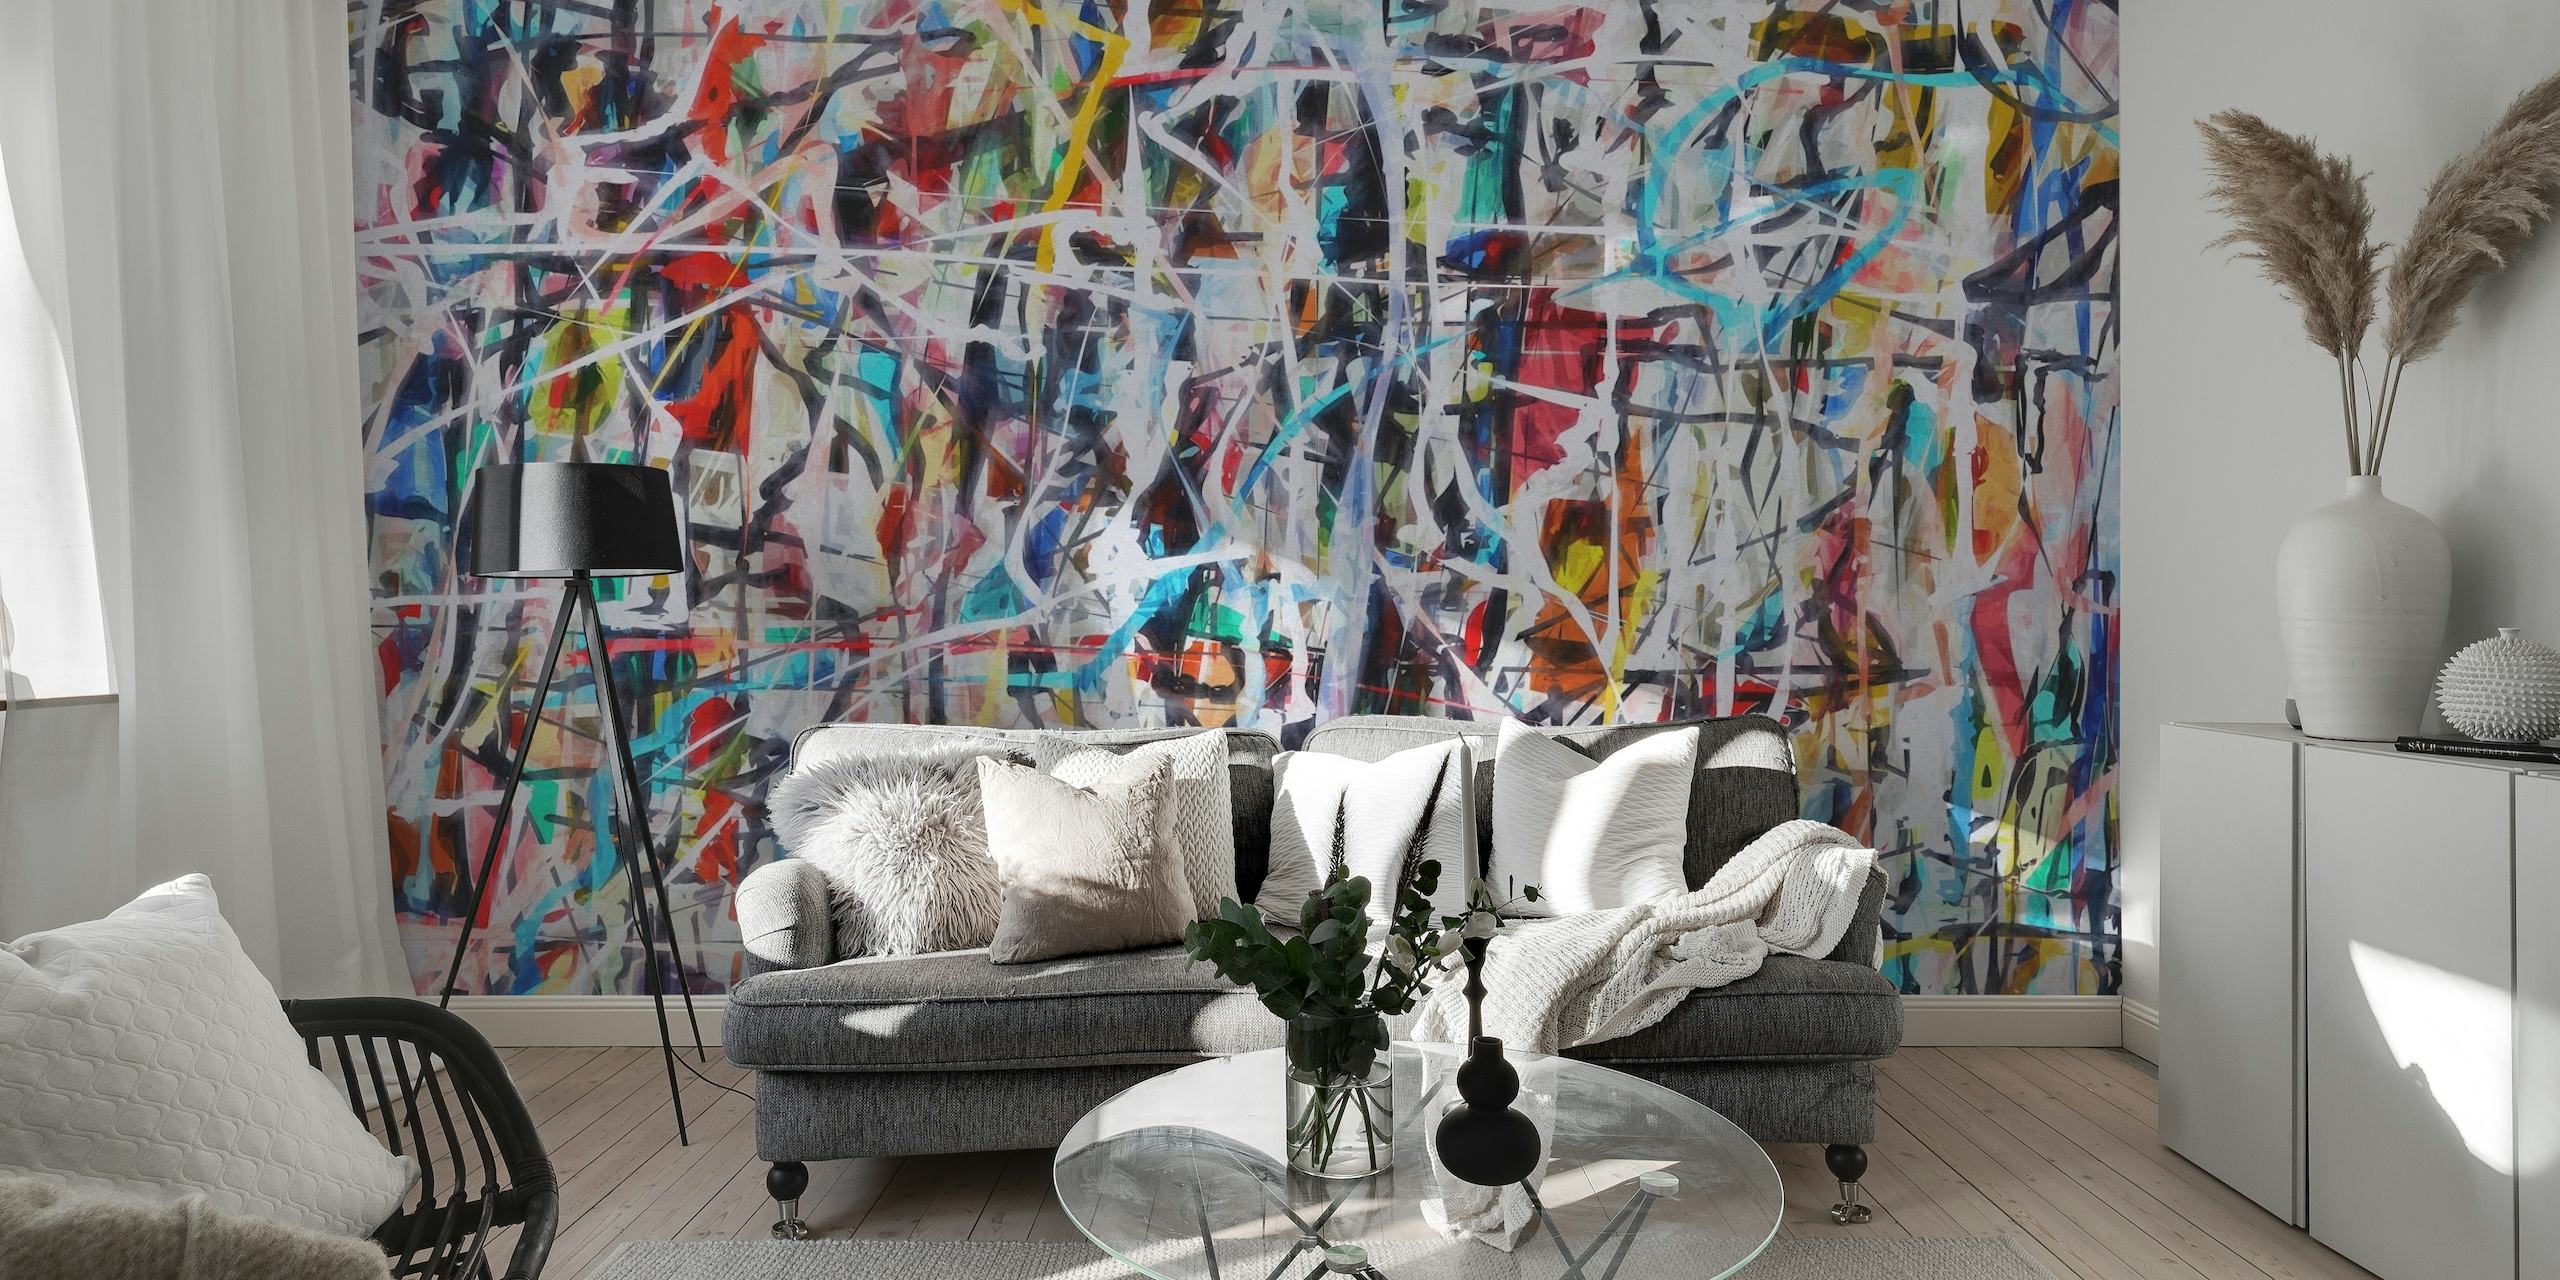 Zidna slika inspirirana apstraktnim ekspresionizmom sa šarenim mrljama i dinamičnim potezima kista